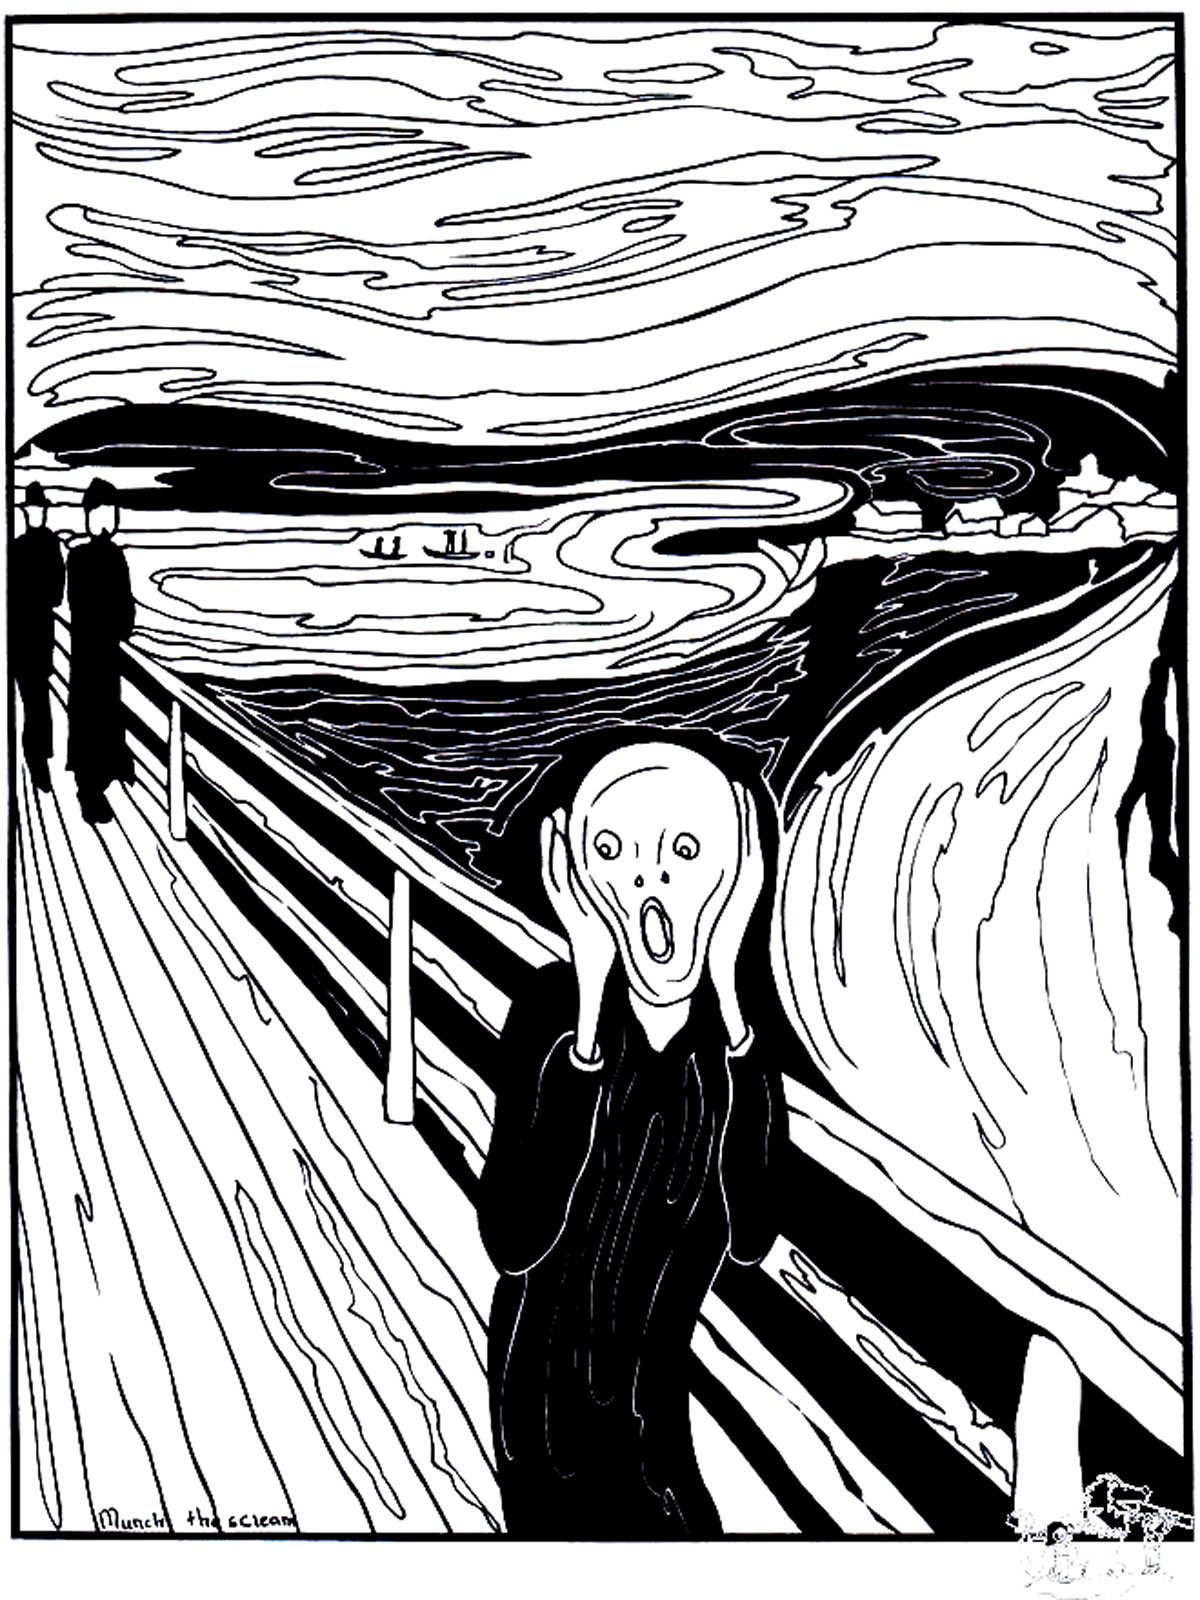 Coloreado creado a partir del cuadro 'El grito' (1893) de Edvard Munch. 'El grito' es un cuadro icónico que representa el sentimiento de opresión y ansiedad que a veces puede abrumarnos.
